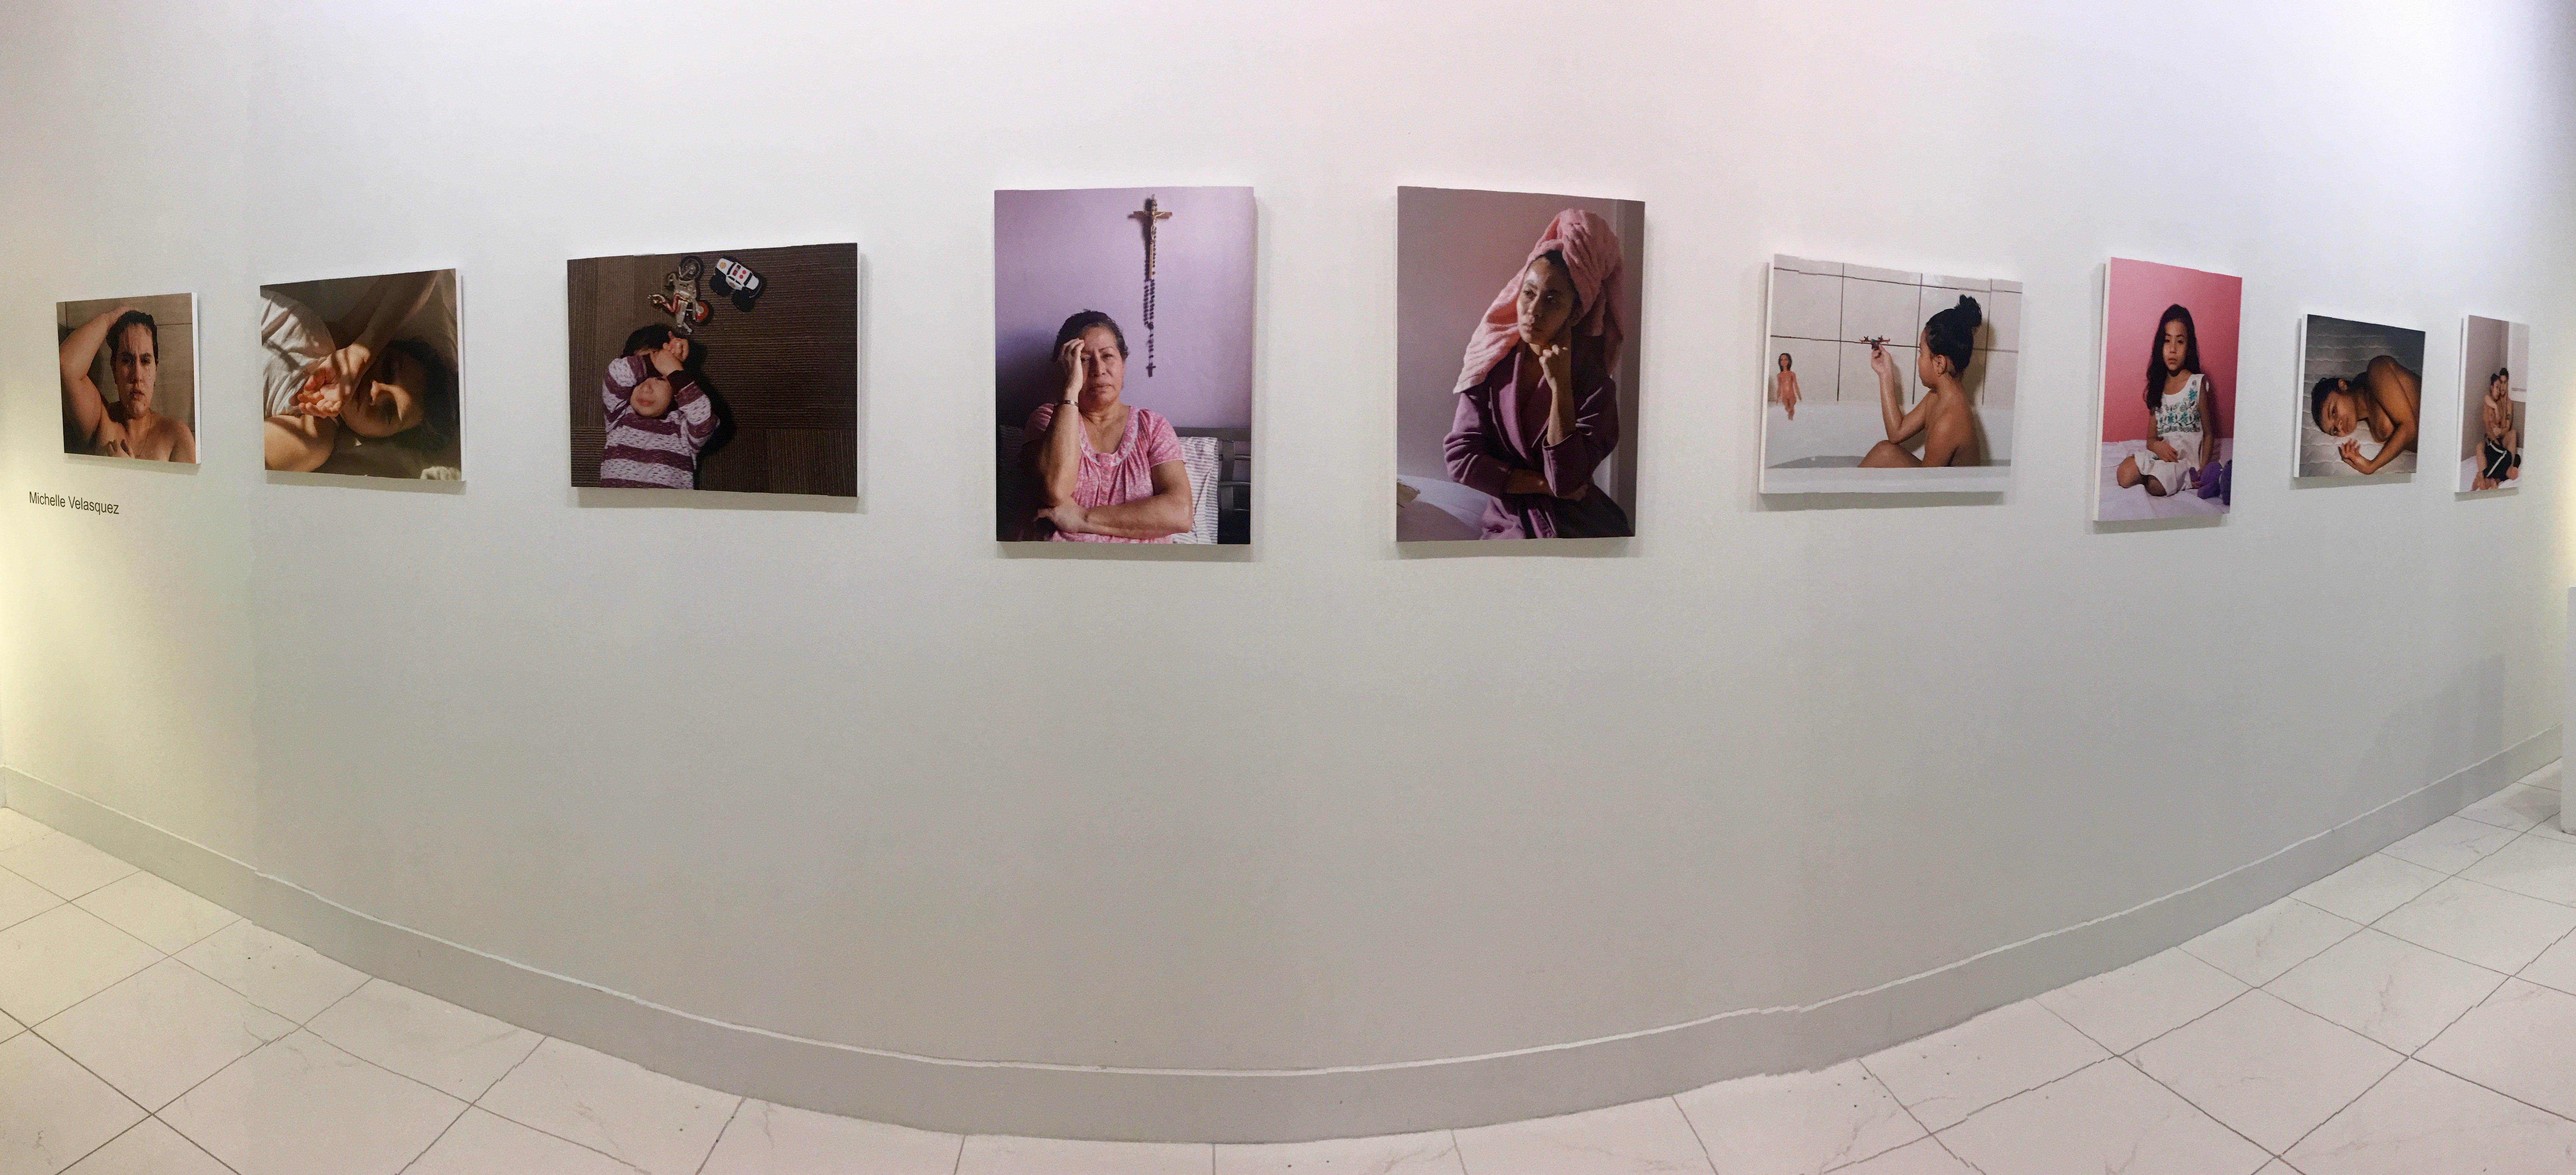 Gallery display of Michelle Velasquez's 'Mi Vida/My Life' photo exhibition.